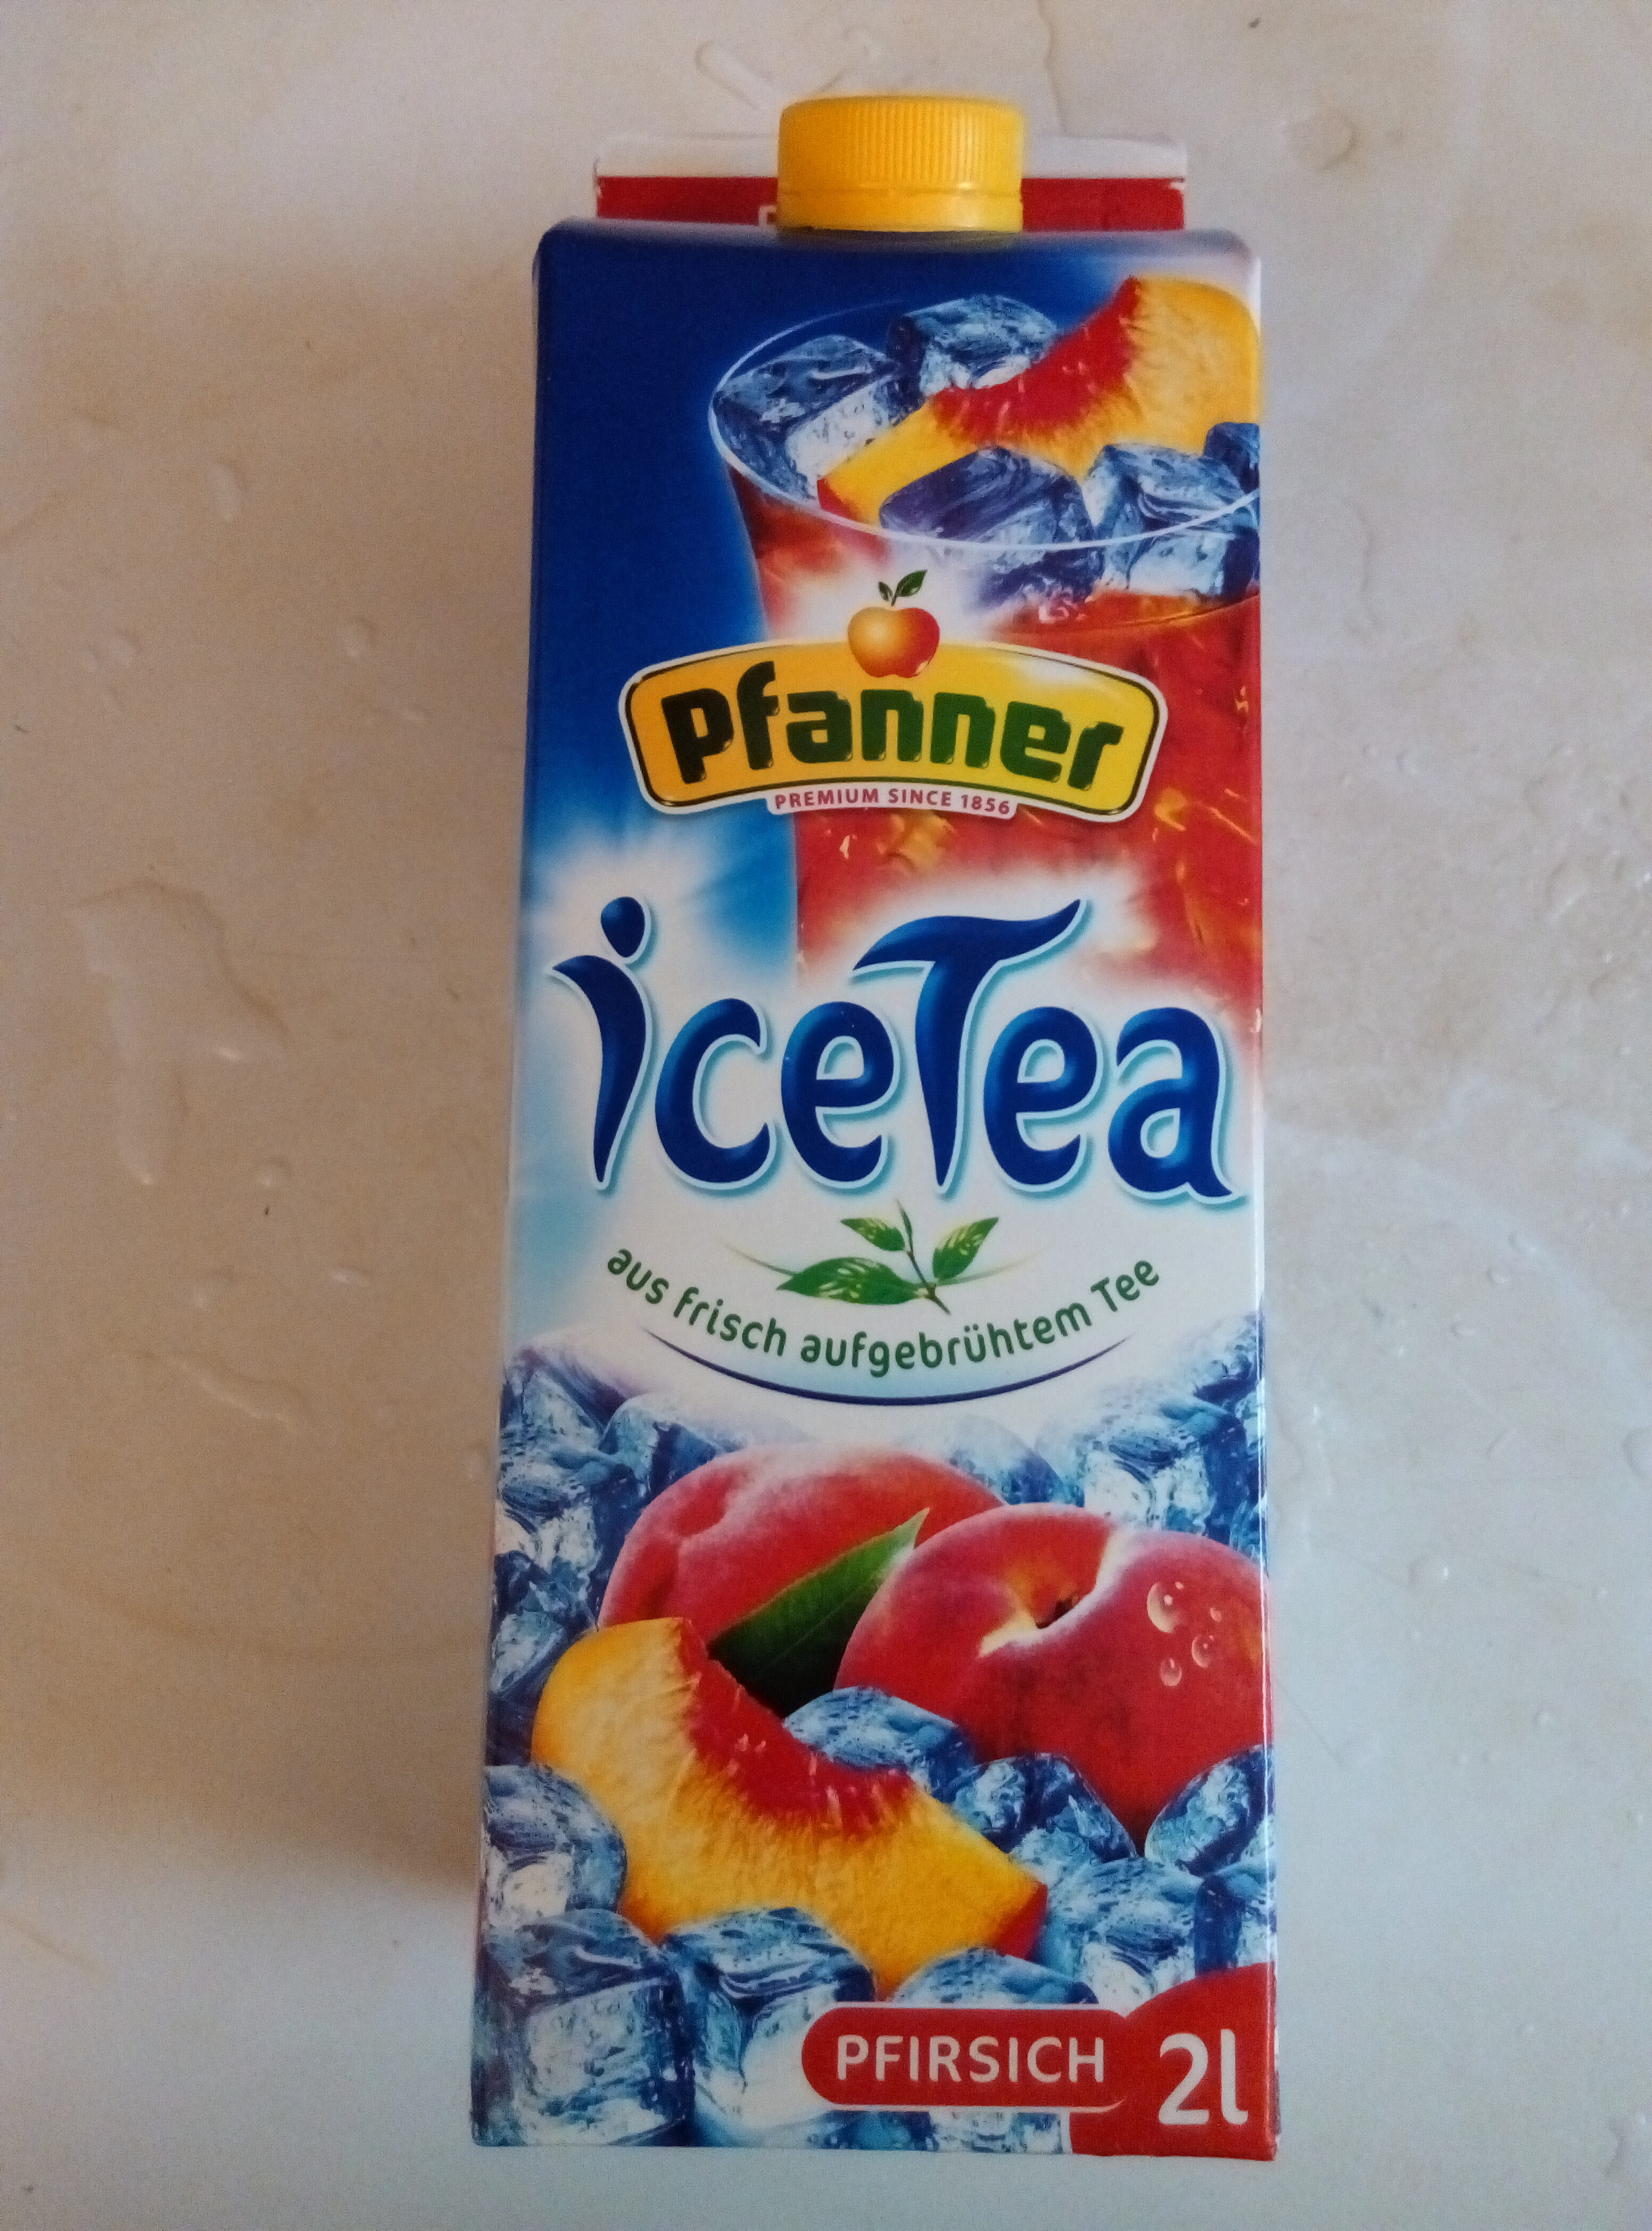 Ice Tea - Pfirsich - Produkt - de